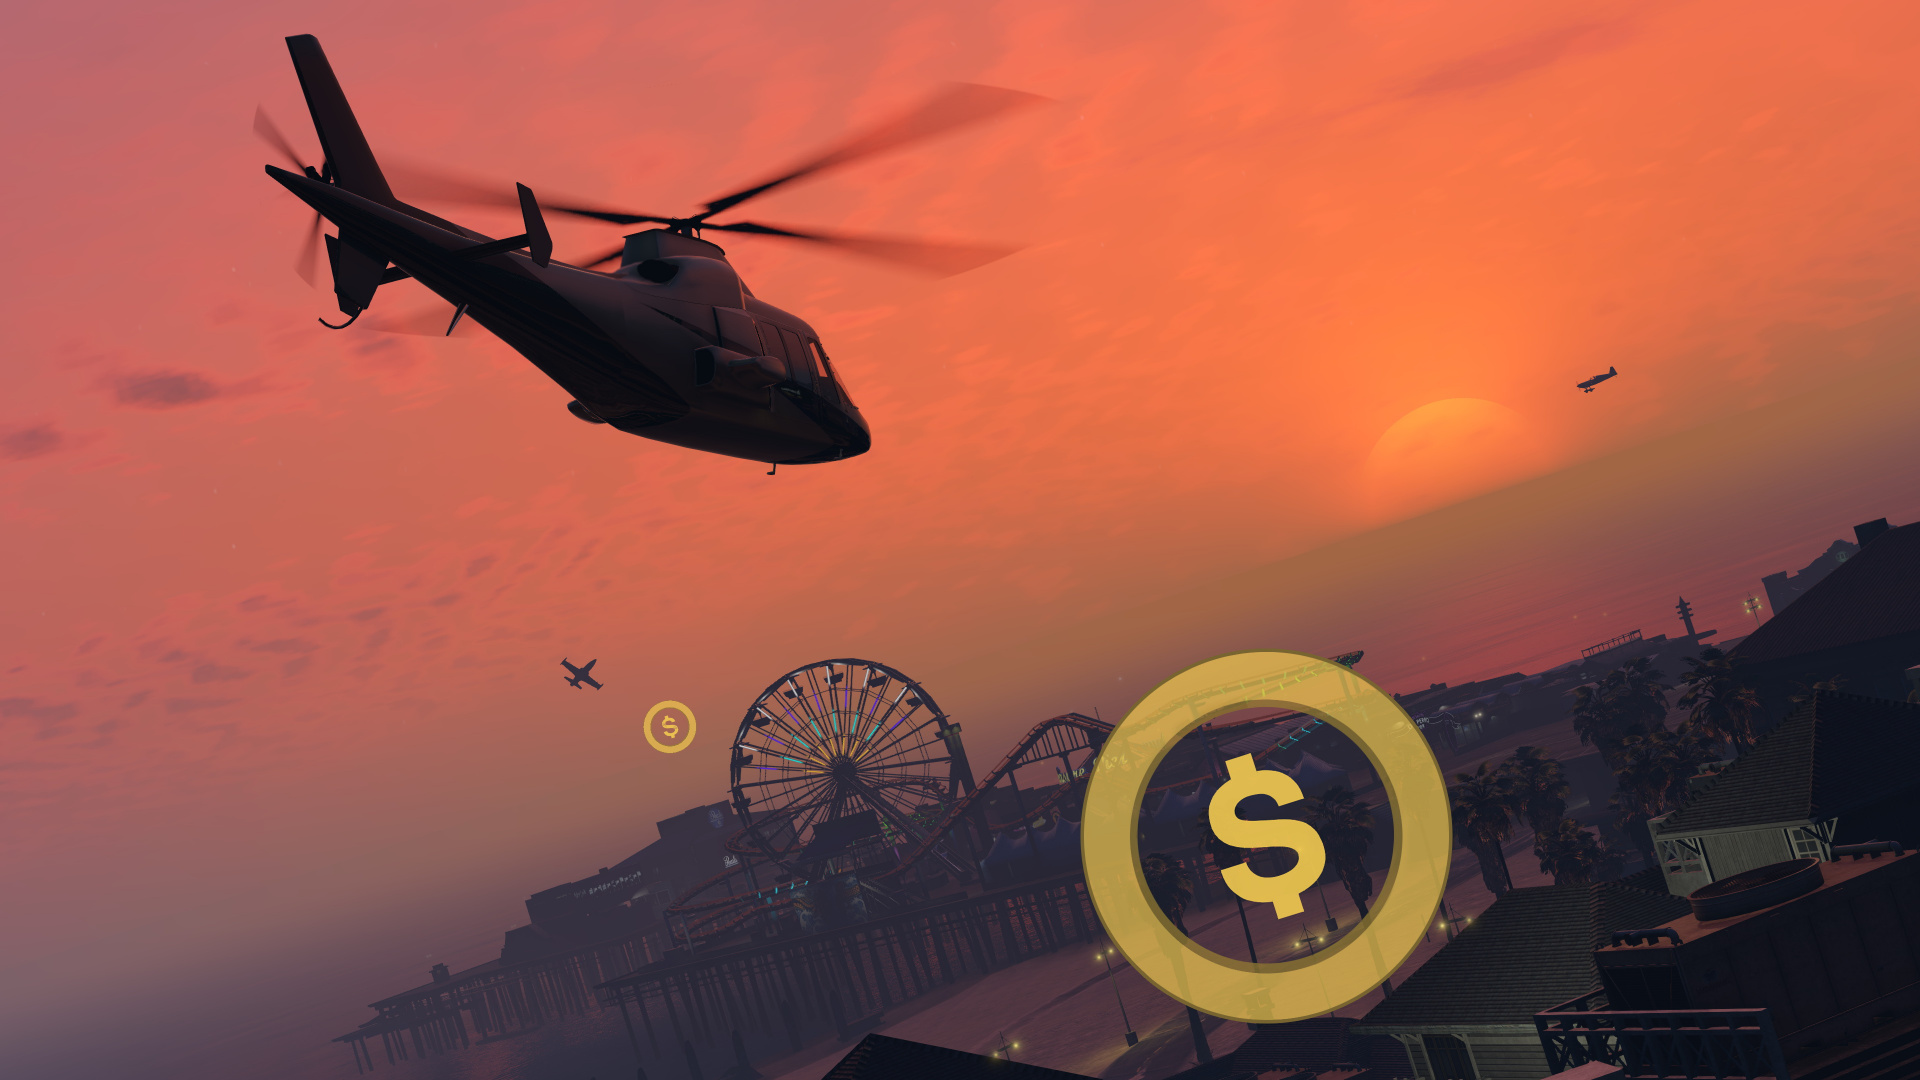 Grand Theft Auto v, Rockstar Games, Mundo Abierto, Playstation 4, Helicóptero. Wallpaper in 1920x1080 Resolution